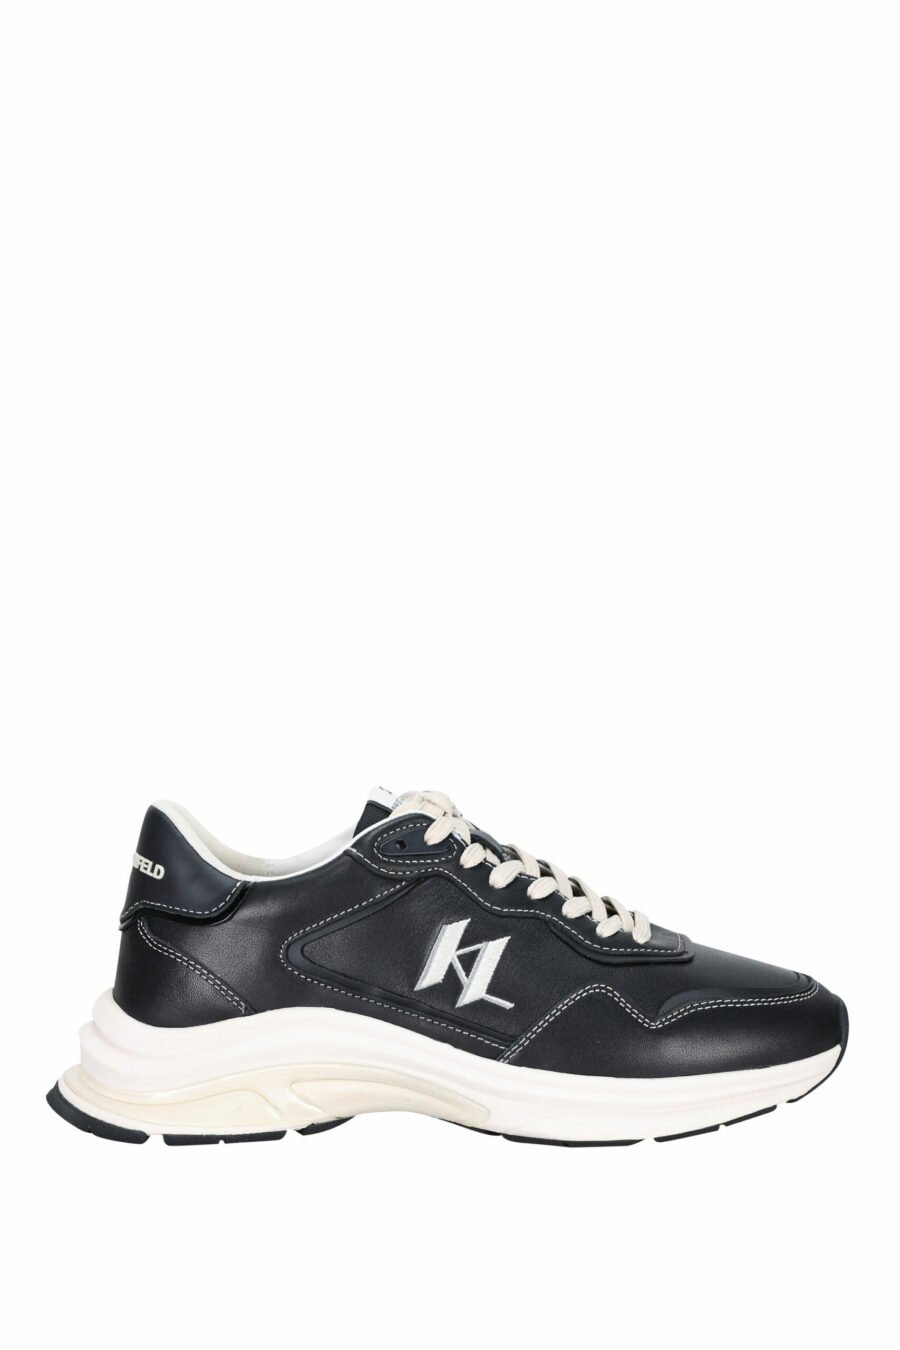 Zapatillas negras "lux finesse" con logo "KL" - 5059529330841 scaled